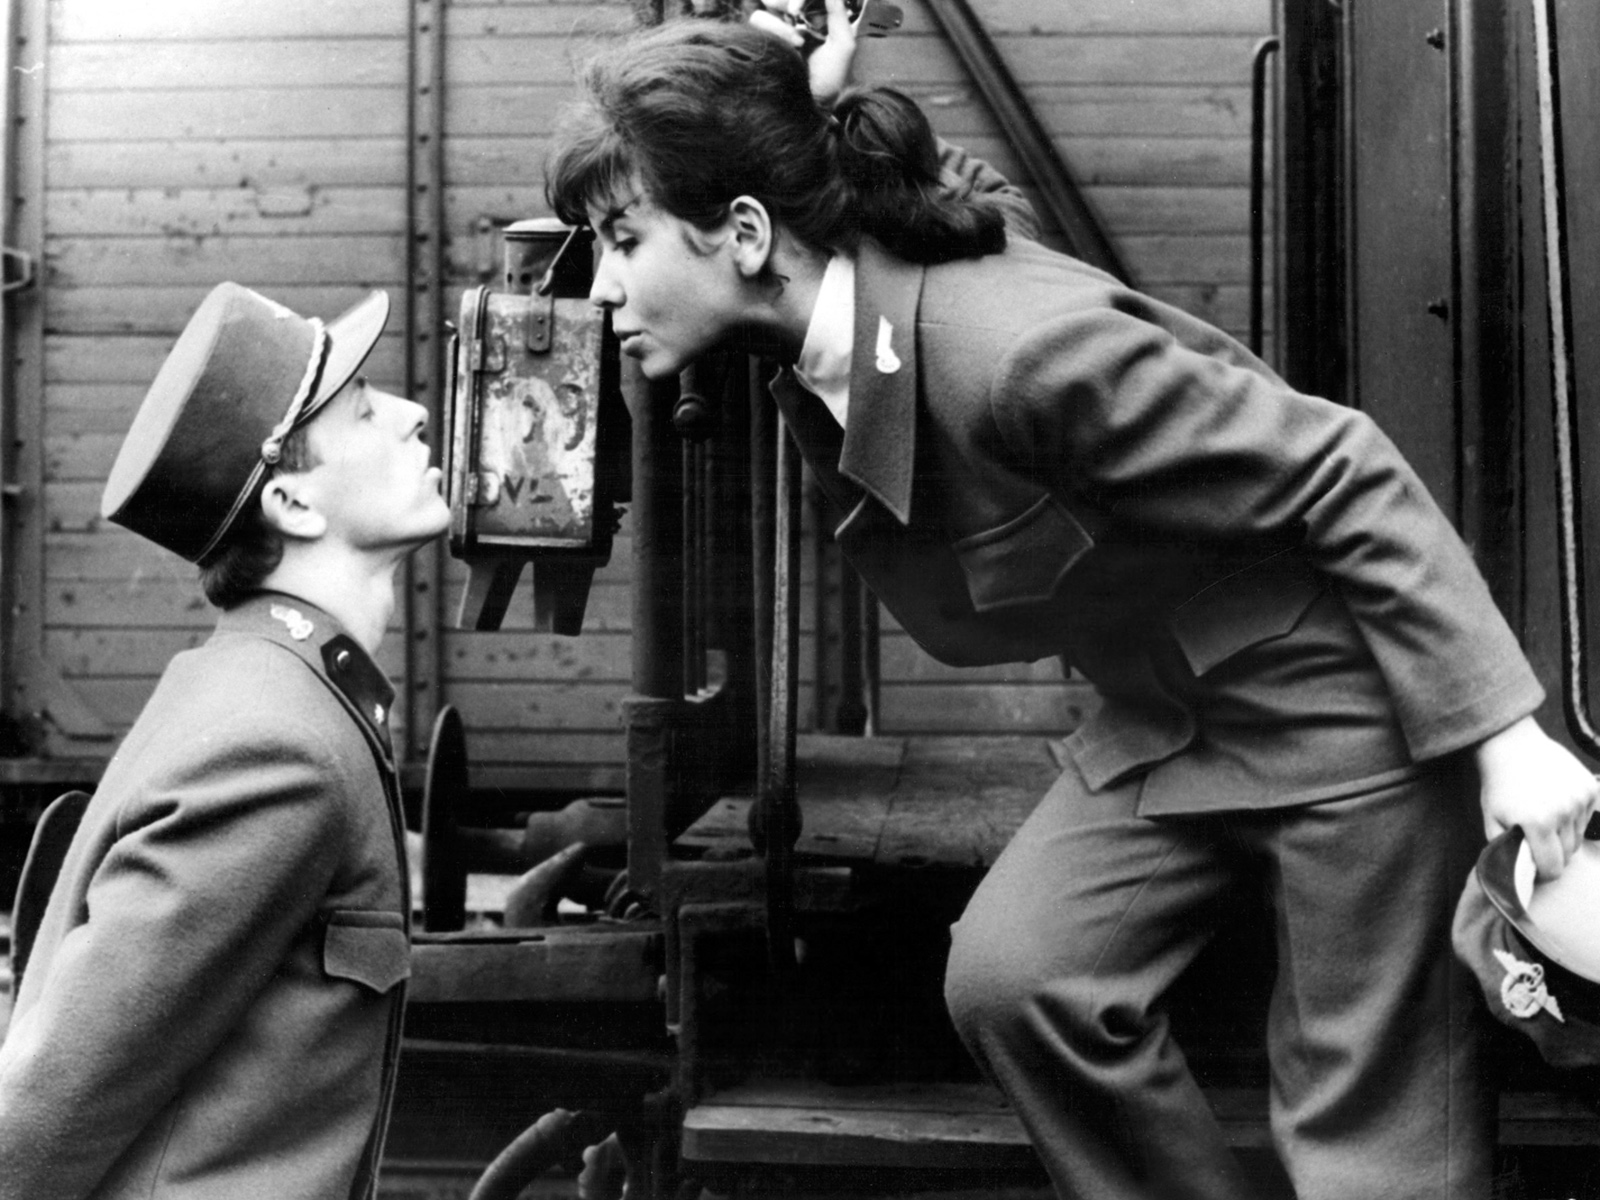 Václav Neckář and Jitka Bendová in Jiří Menzel’s film Closely Watched Trains (1966), which is based on a novel by Bohumil Hrabal